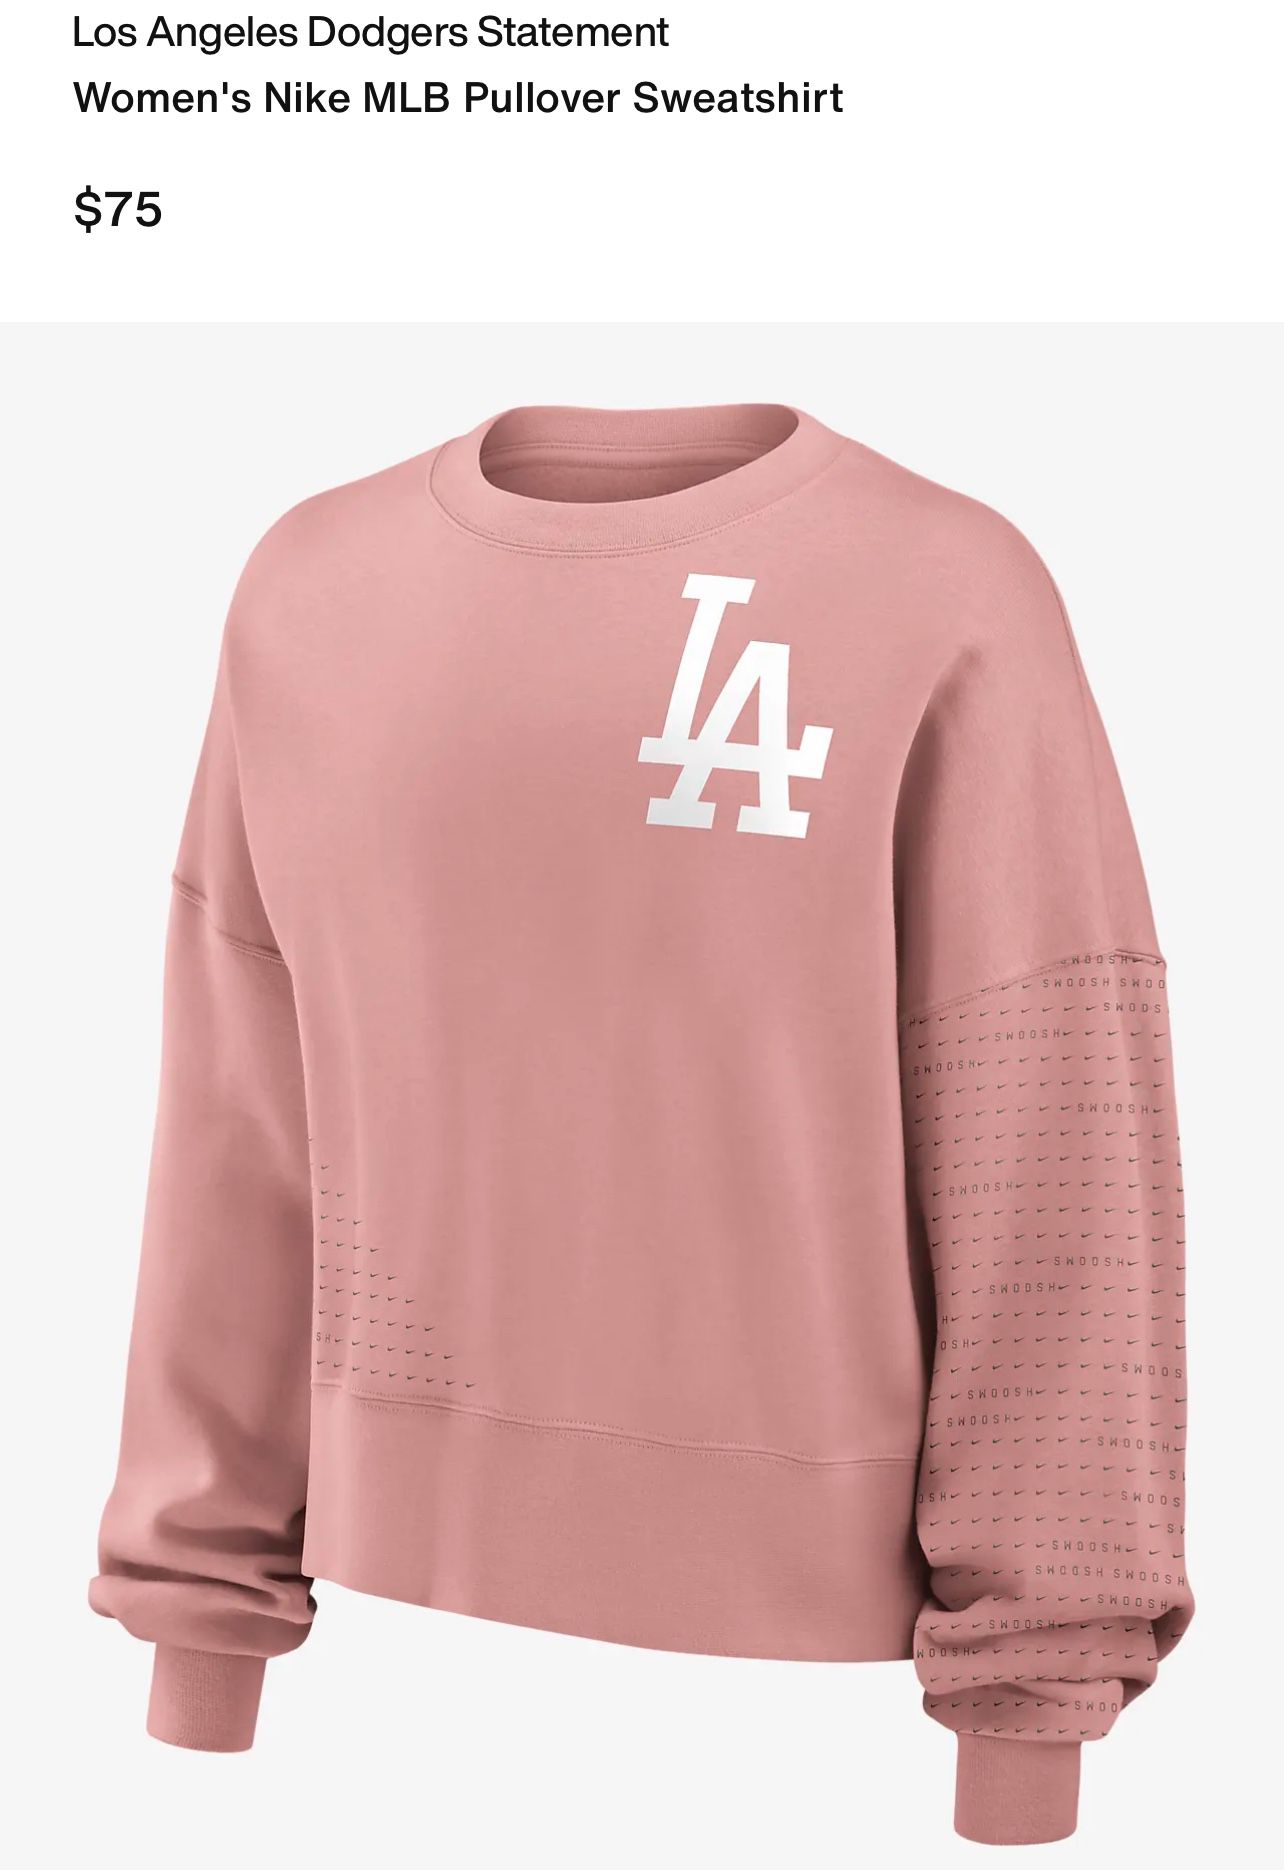 Women’s Dodgers Sweatshirt Nike XL